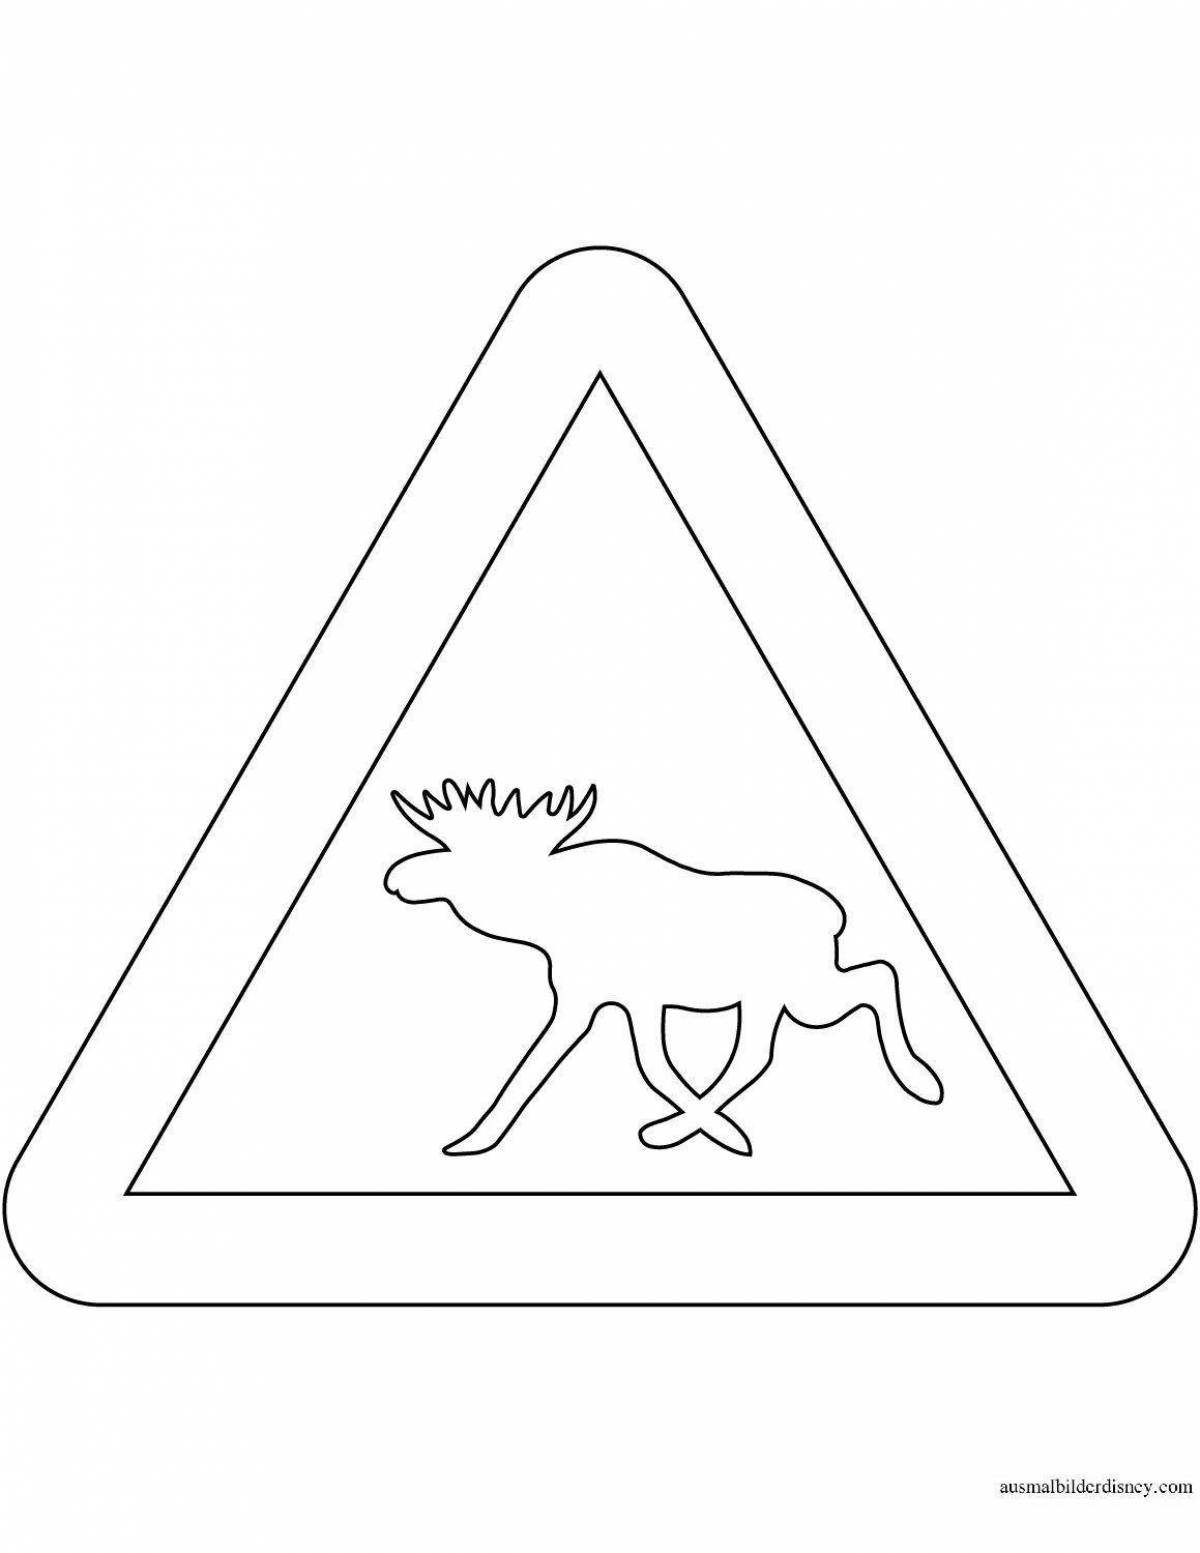 Веселая раскраска знак правил дорожного движения диких животных